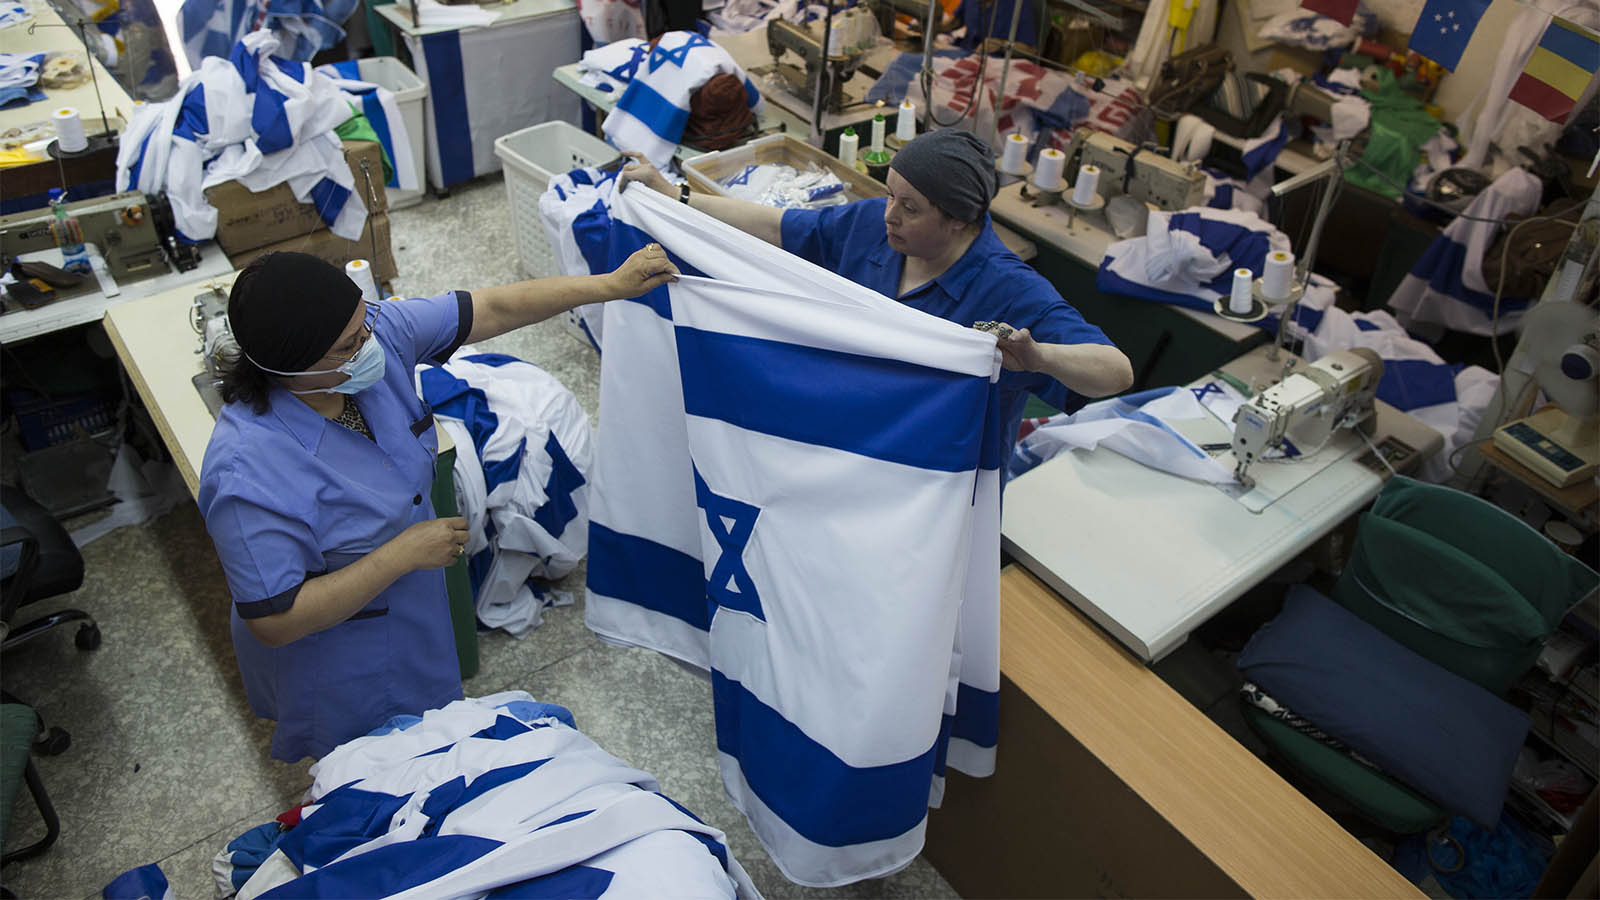 עובדות ישראליות במפעל לייצור דגלים בירושלים. צילום ארכיון, למצולמות אין קשר לכתבה (צילום: יונתן זינדל/ פלאש 90)